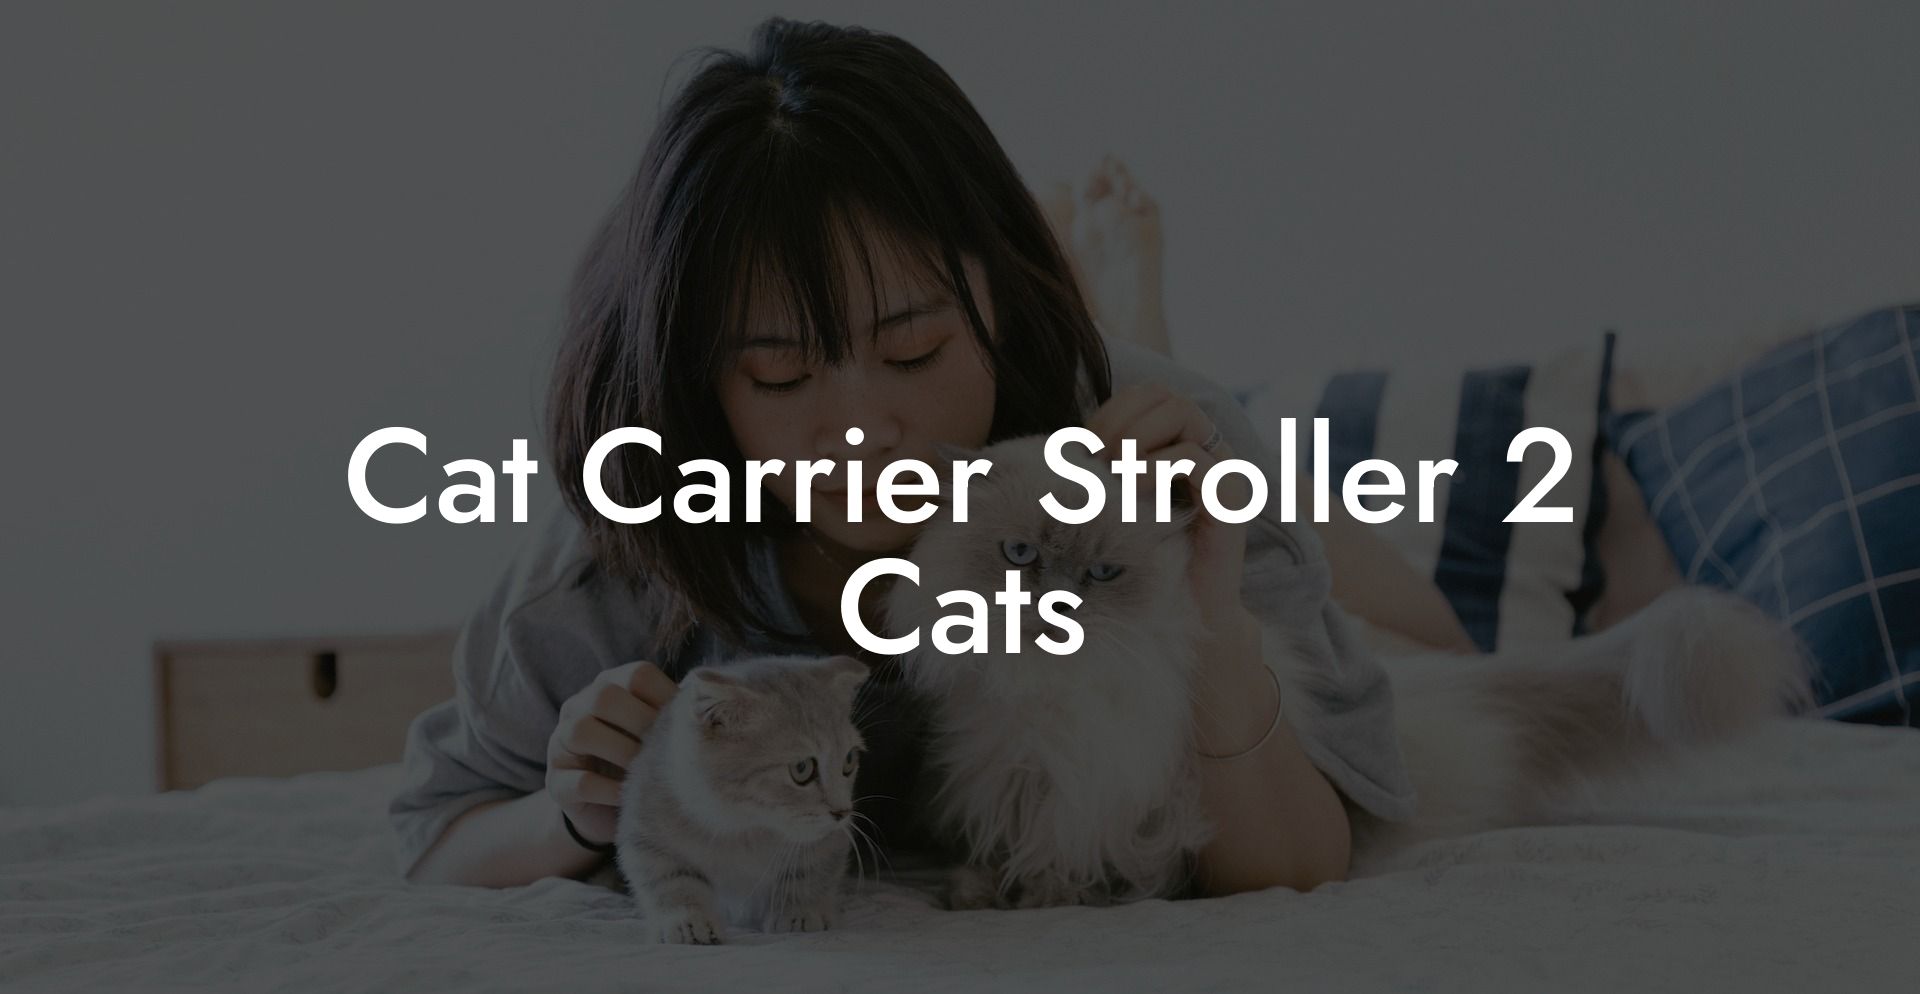 Cat Carrier Stroller 2 Cats